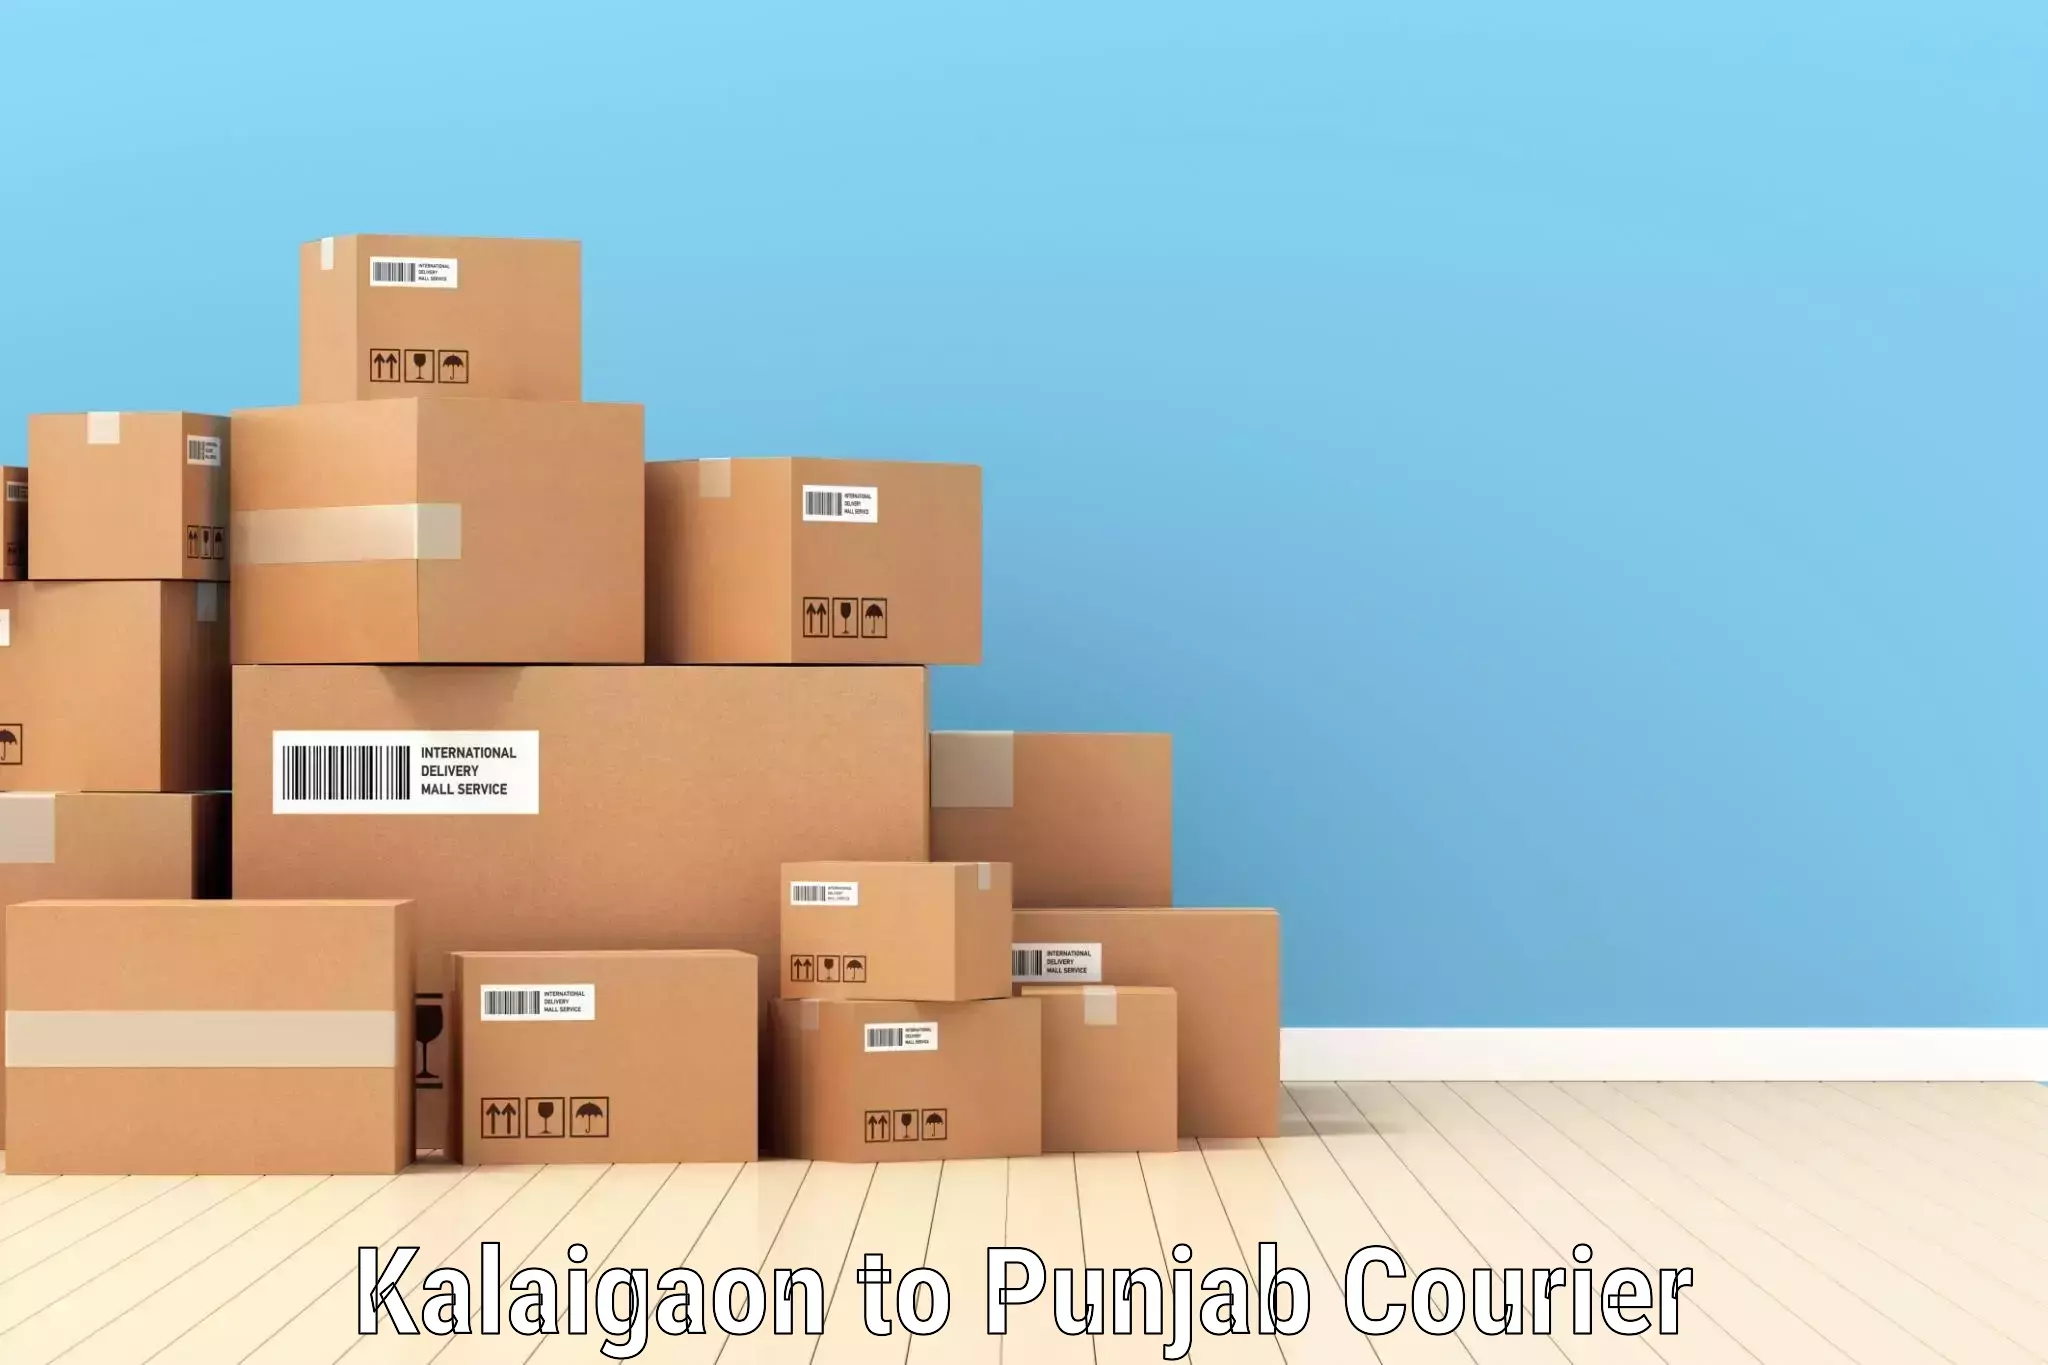 Global shipping solutions Kalaigaon to Anandpur Sahib